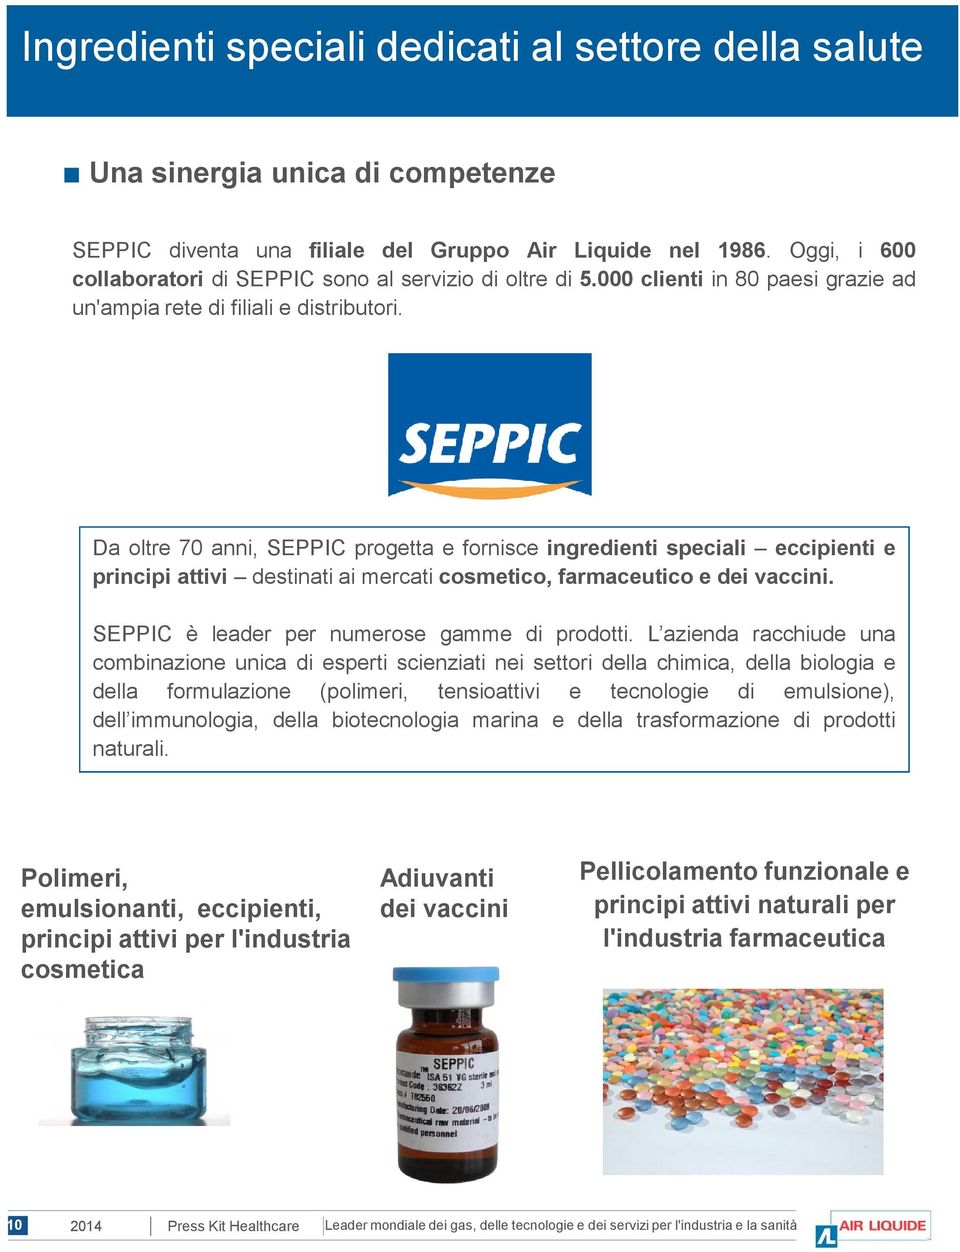 Da oltre 70 anni, SEPPIC progetta e fornisce ingredienti speciali eccipienti e principi attivi destinati ai mercati cosmetico, farmaceutico e dei vaccini.